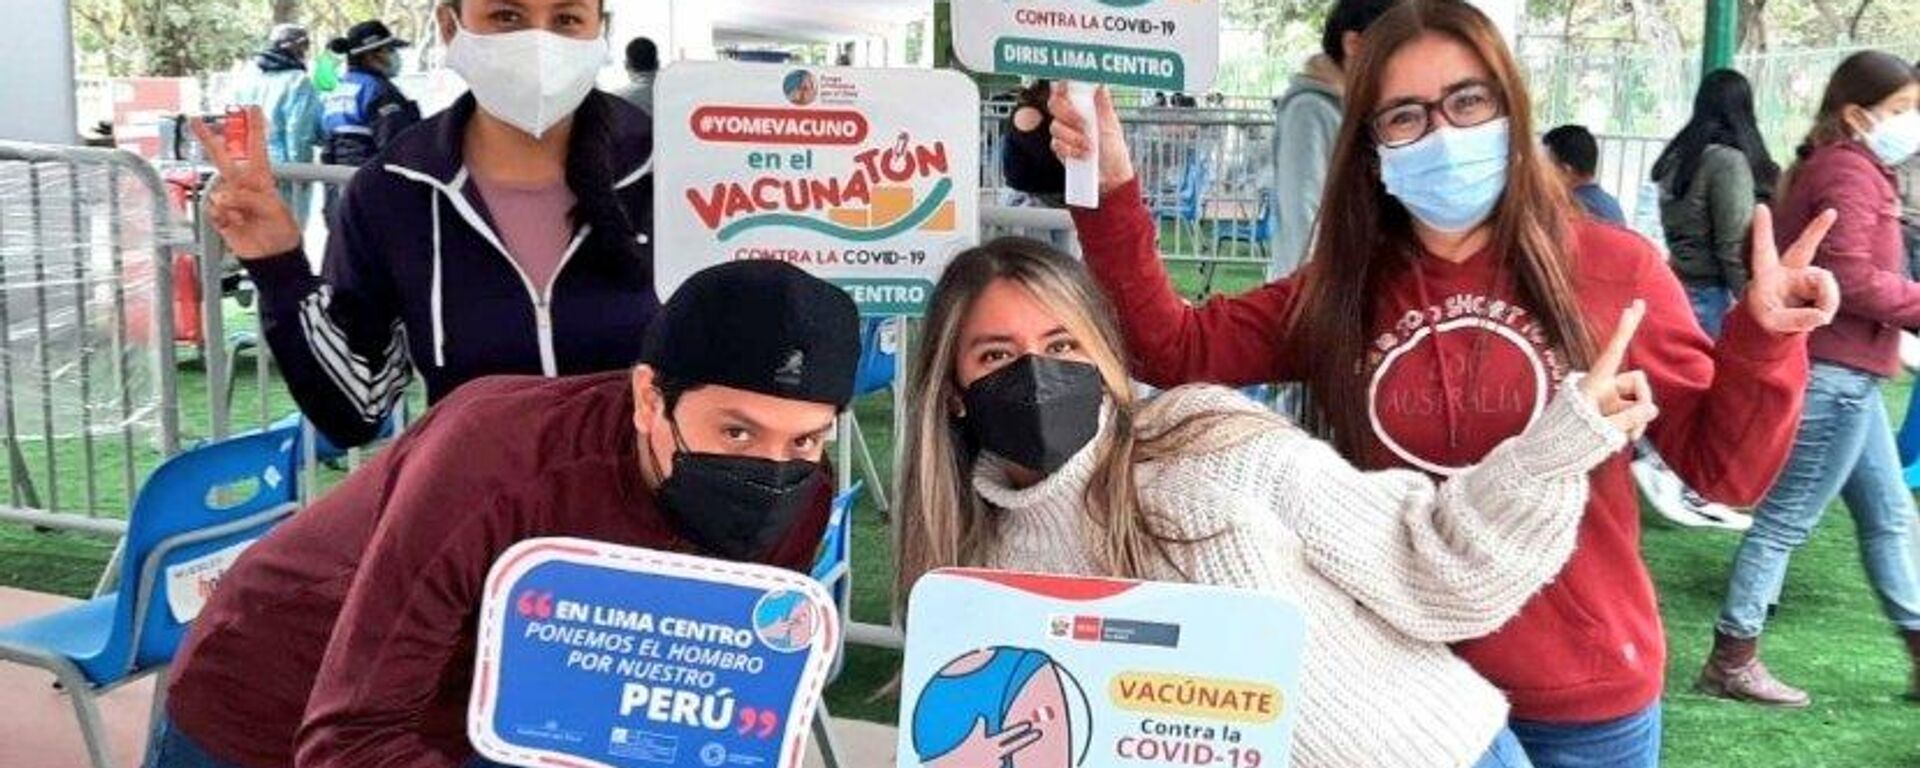 Campaña de vacunación en Perú - Sputnik Mundo, 1920, 14.09.2021